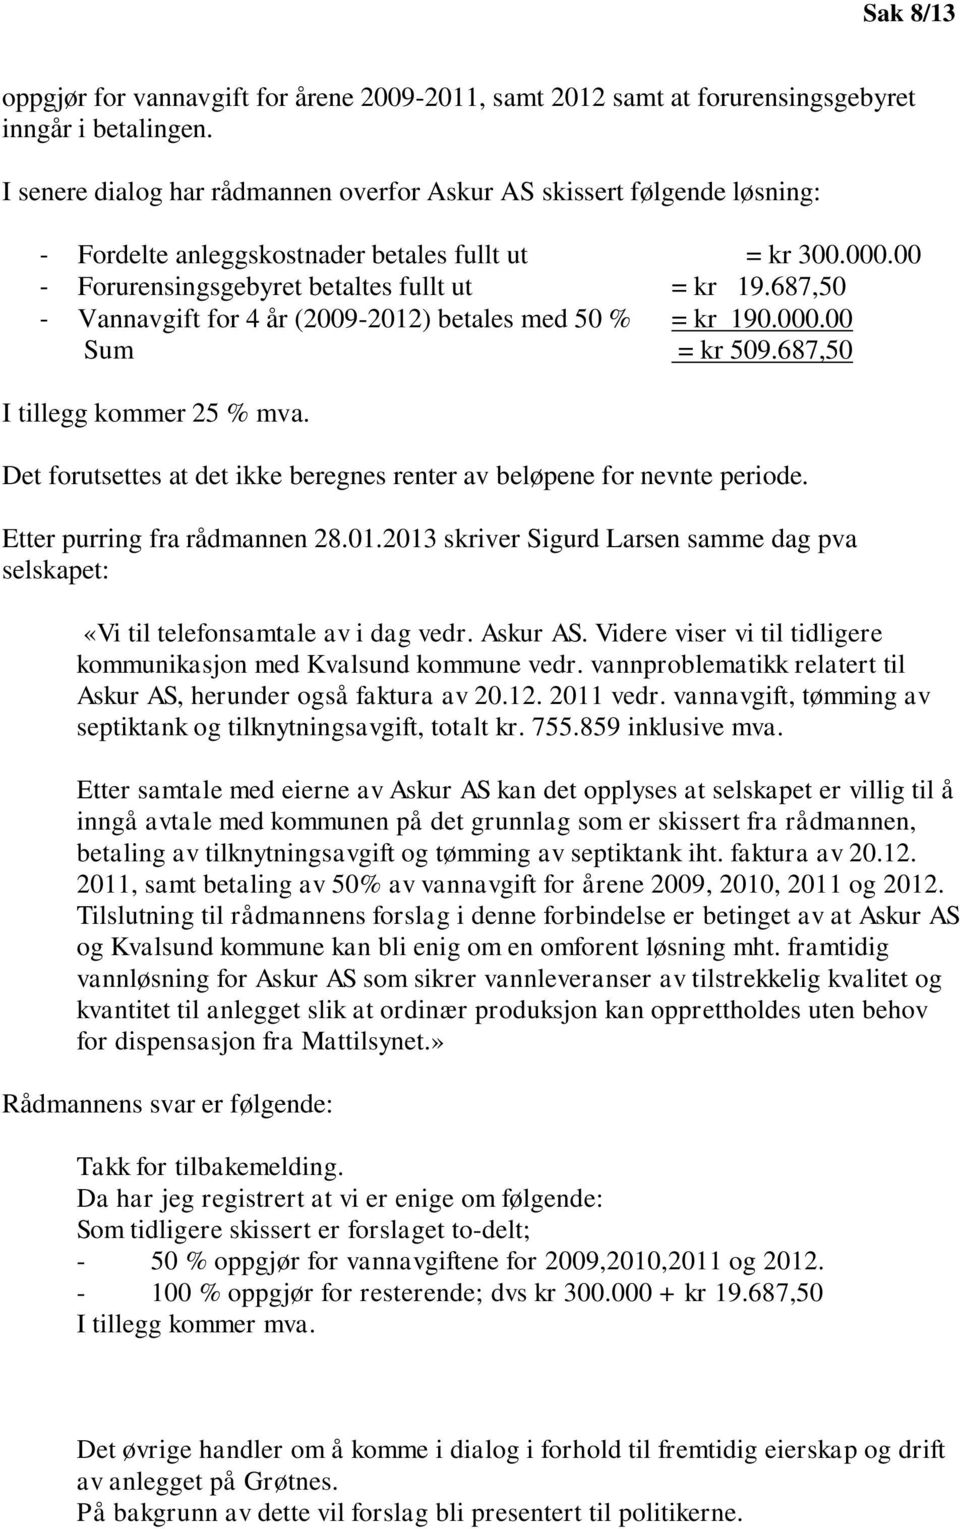 687,50 - Vannavgift for 4 år (2009-2012) betales med 50 % = kr 190.000.00 Sum = kr 509.687,50 I tillegg kommer 25 % mva. Det forutsettes at det ikke beregnes renter av beløpene for nevnte periode.